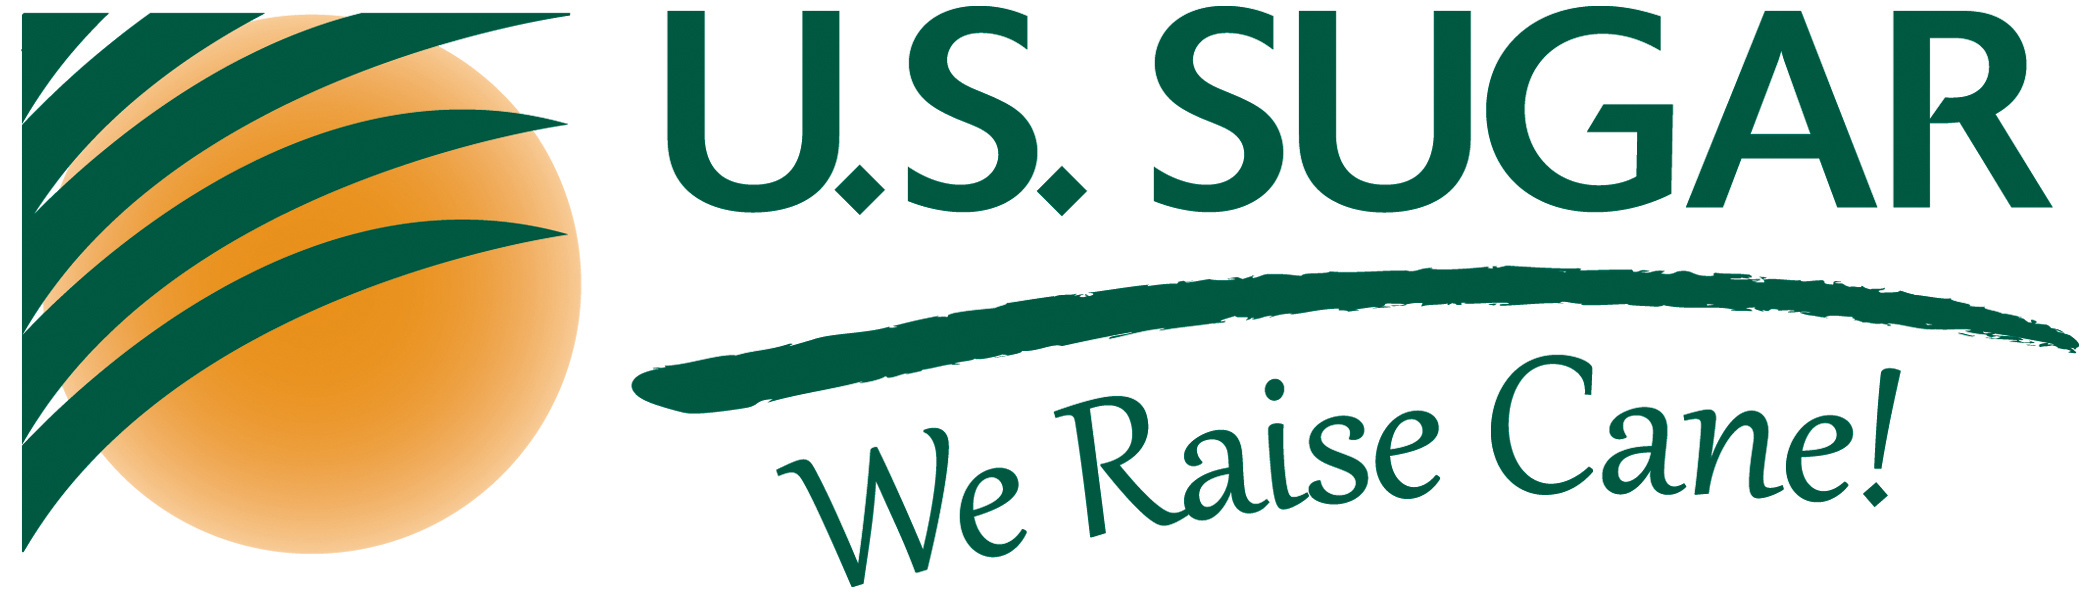 U.S. Sugar logo